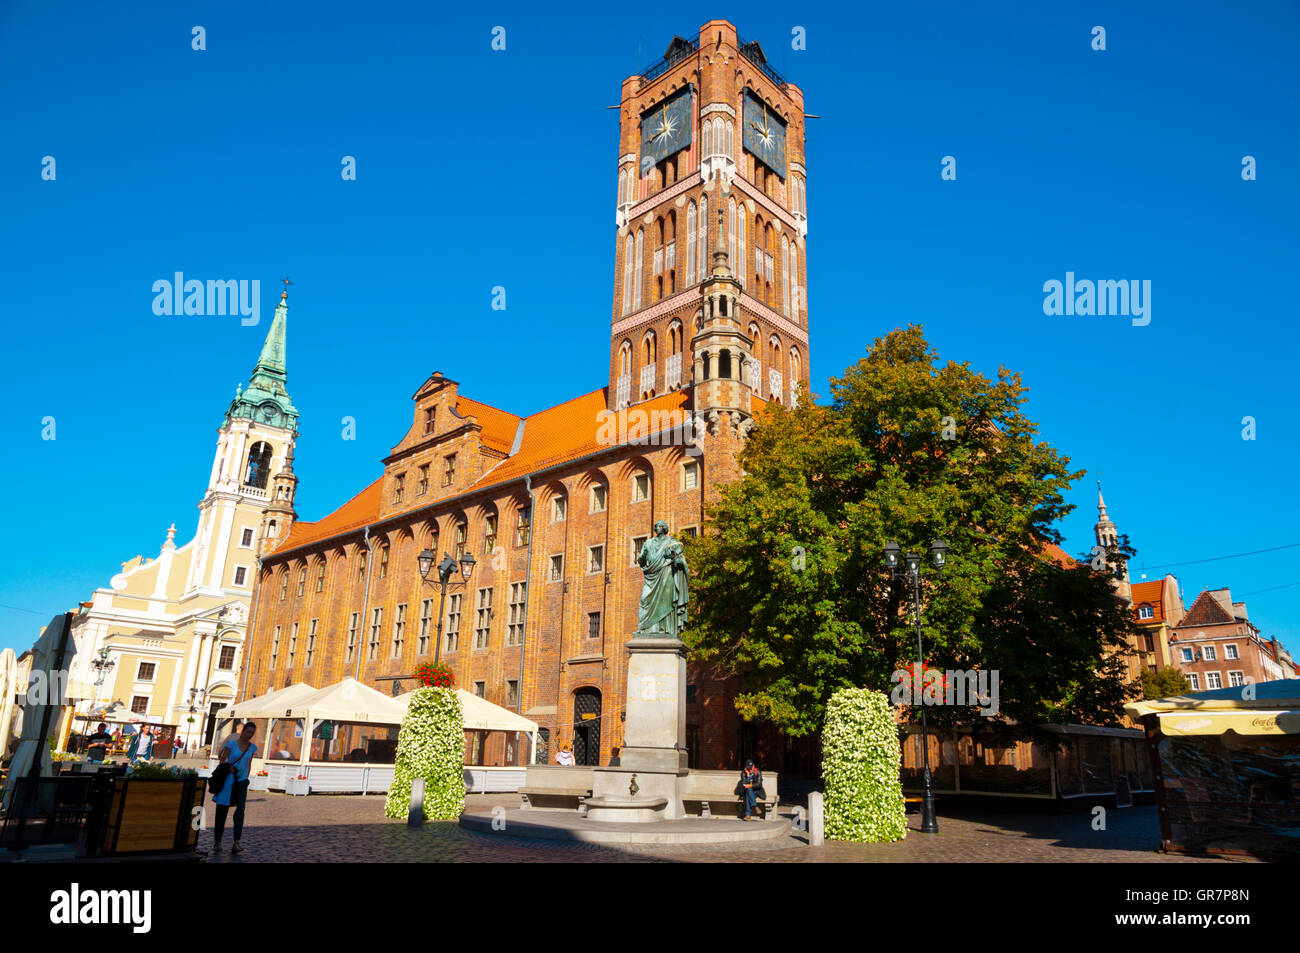 Rynek Staromiejski, old town square, with Ratusz Staromiejski, old town town hall, Torun, Pomerania, Poland Stock Photo